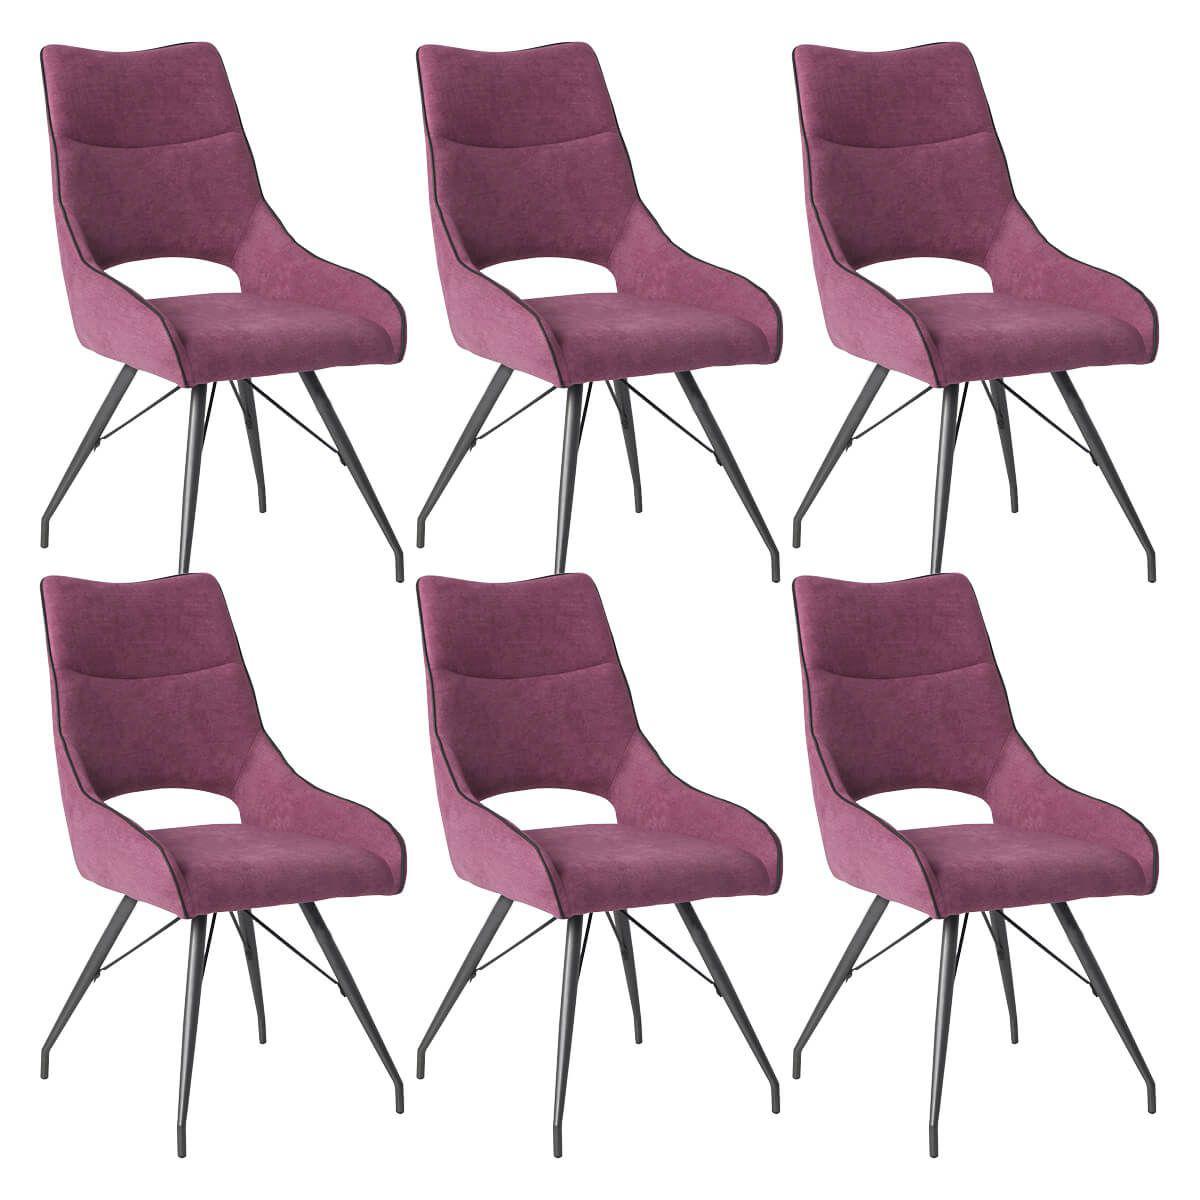 Altobuy - AMADO - Lot de 6 Chaises Tissu Coloris Violet - Chaises